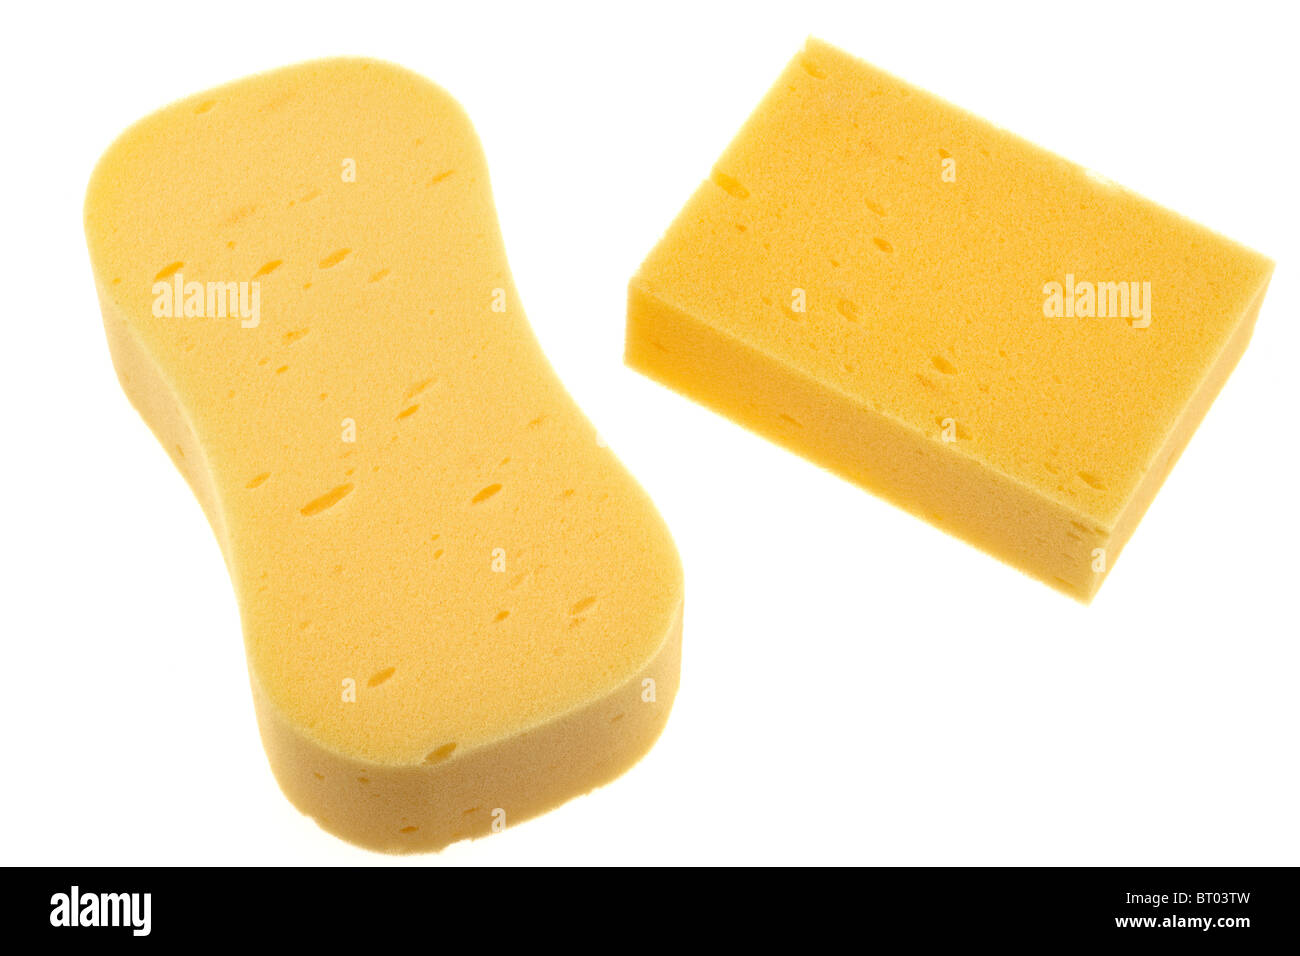 Two yellow sponges Stock Photo